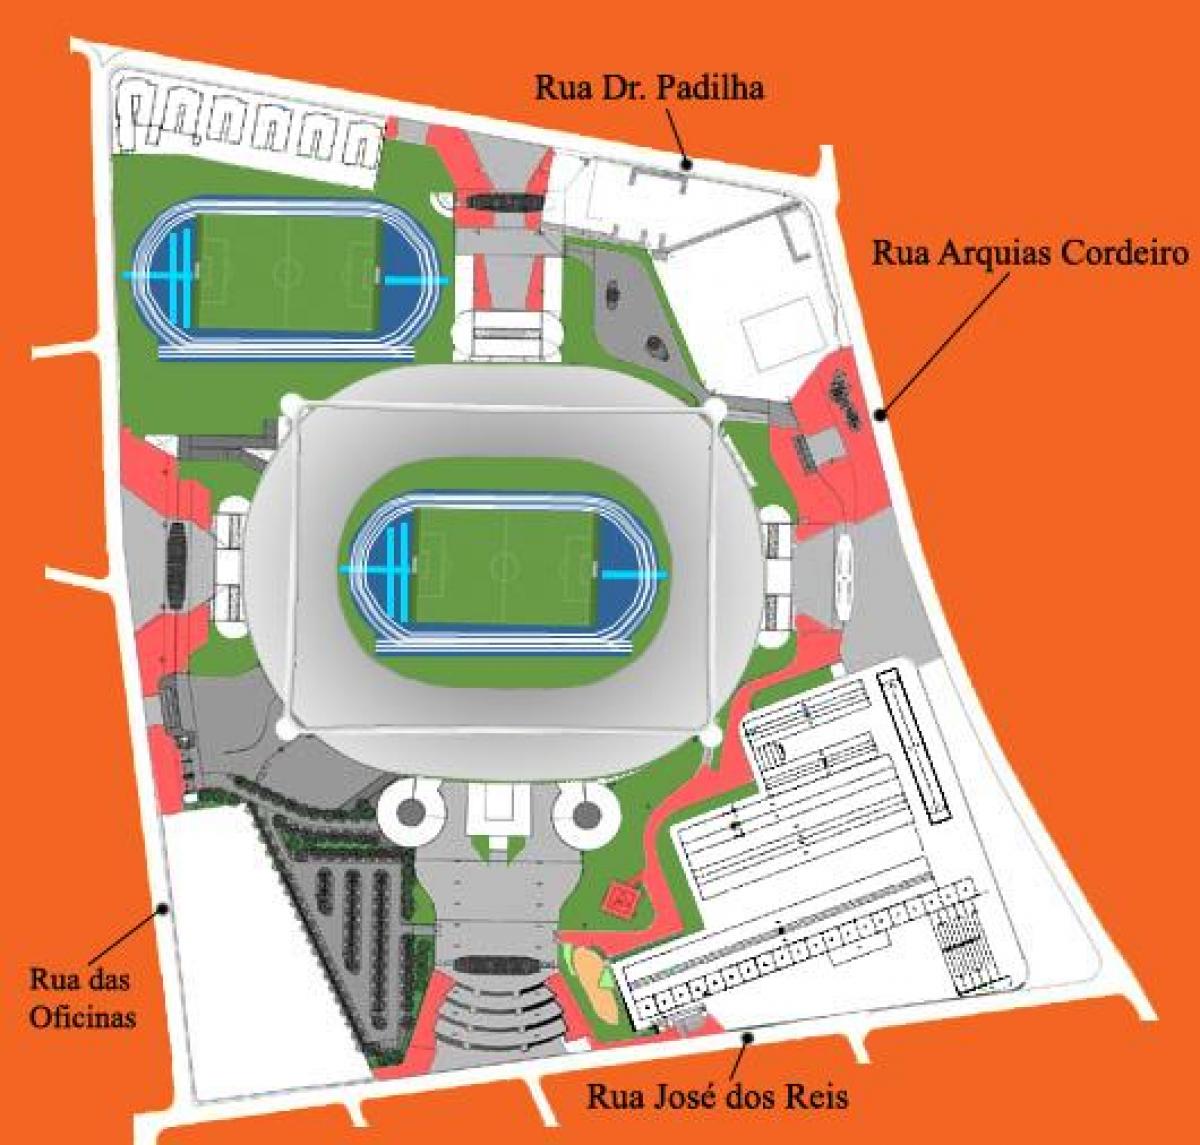 Картата стадион Жоао авеланжа в энженьяне